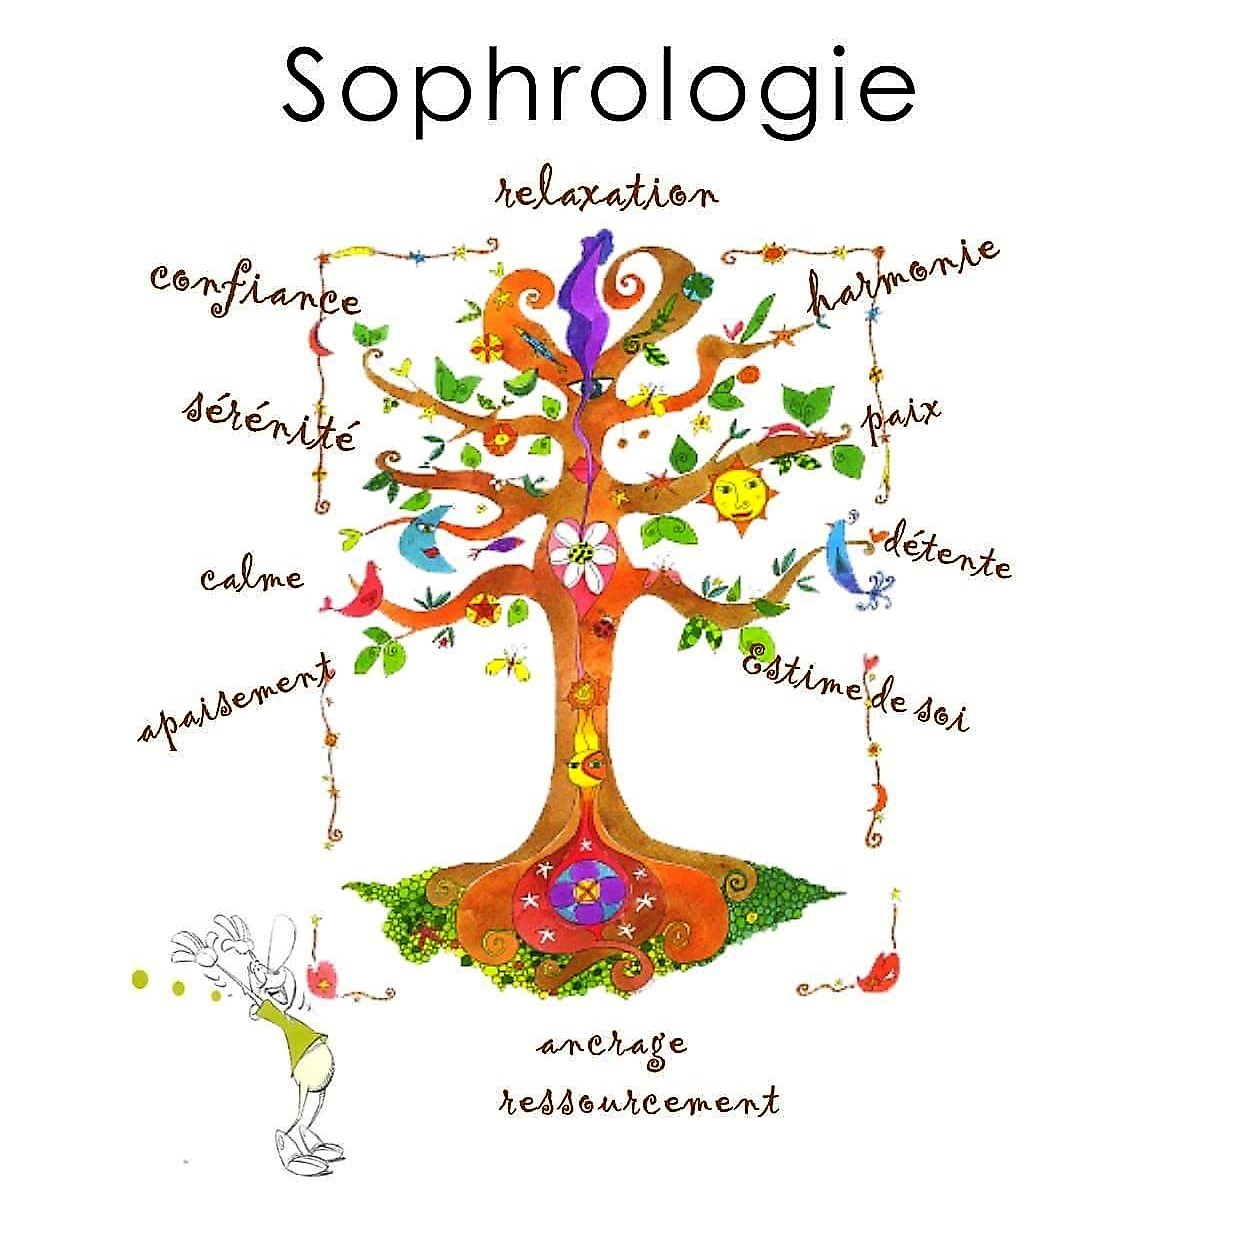 Sophrologie / Relaxation